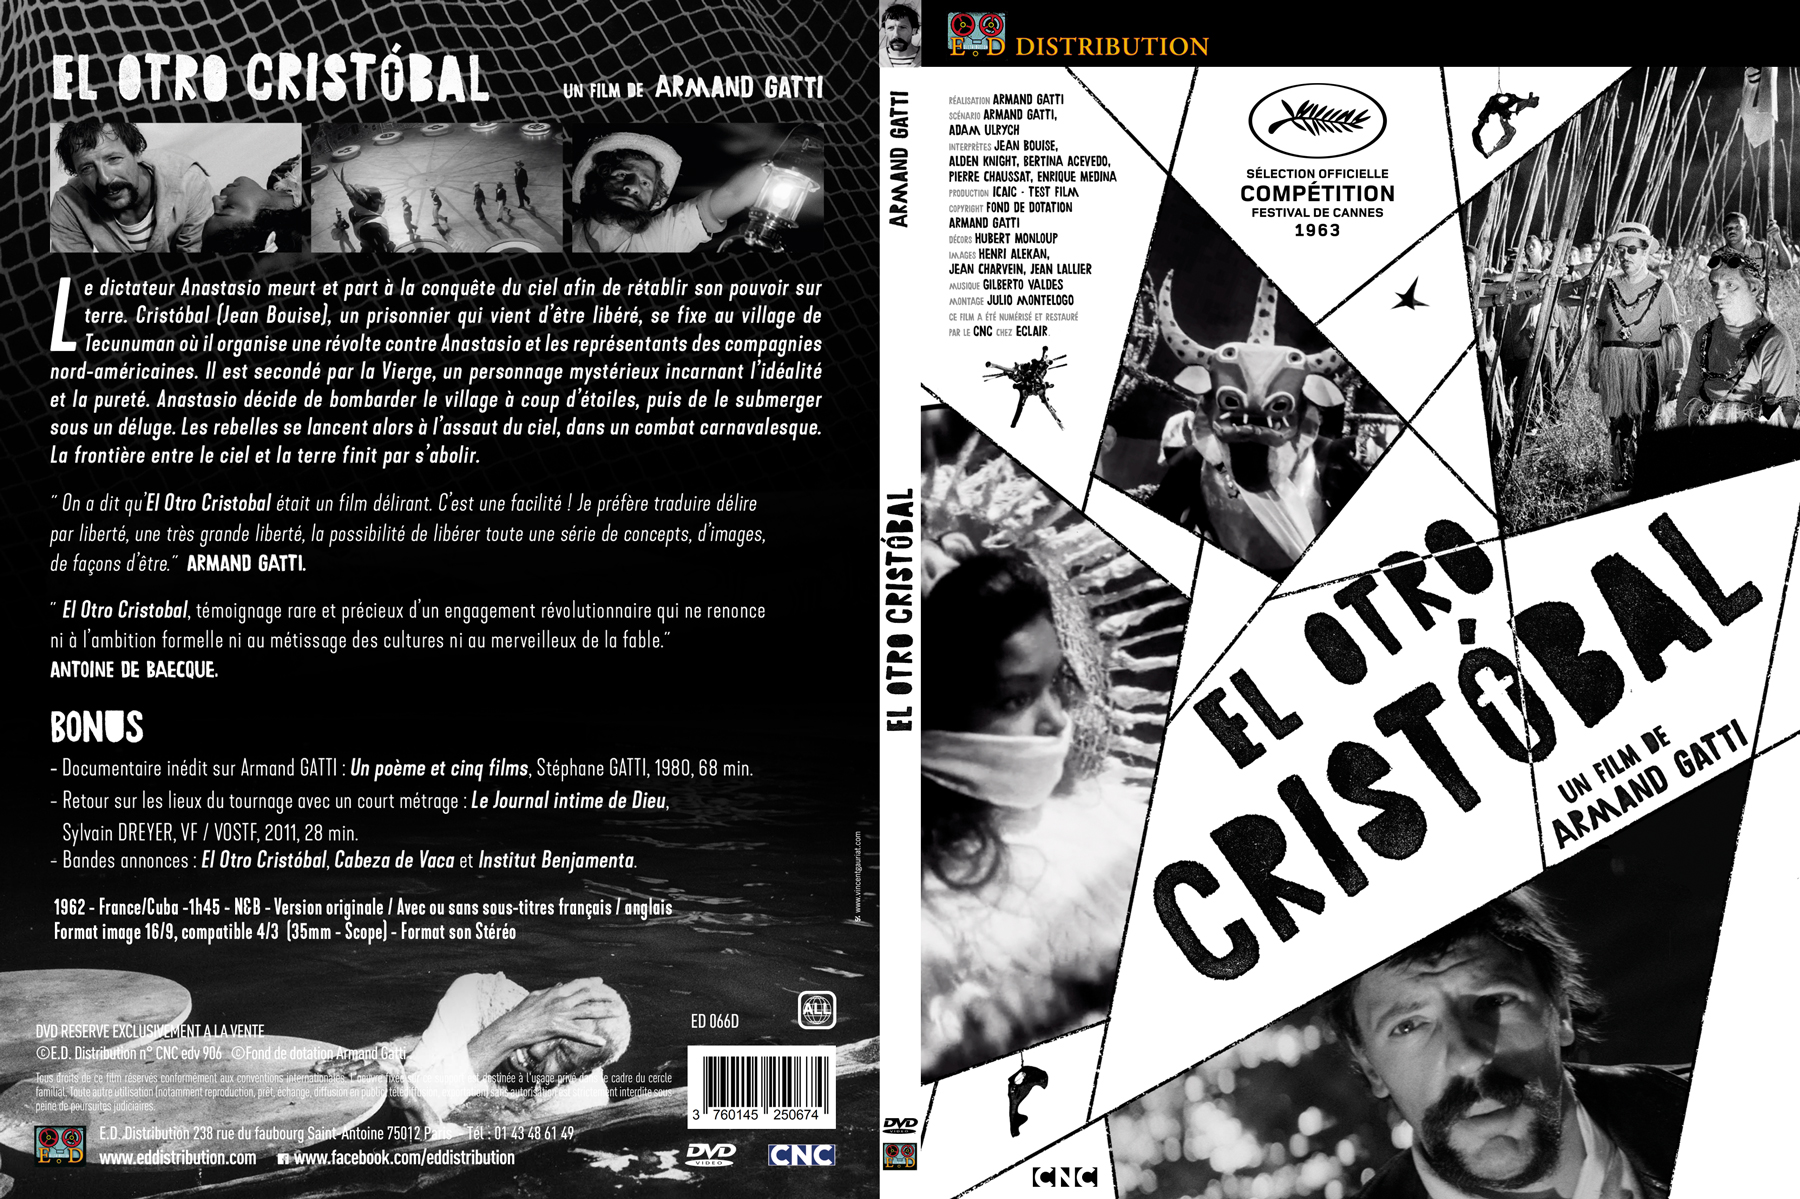 Jaquette DVD El otro cristobal